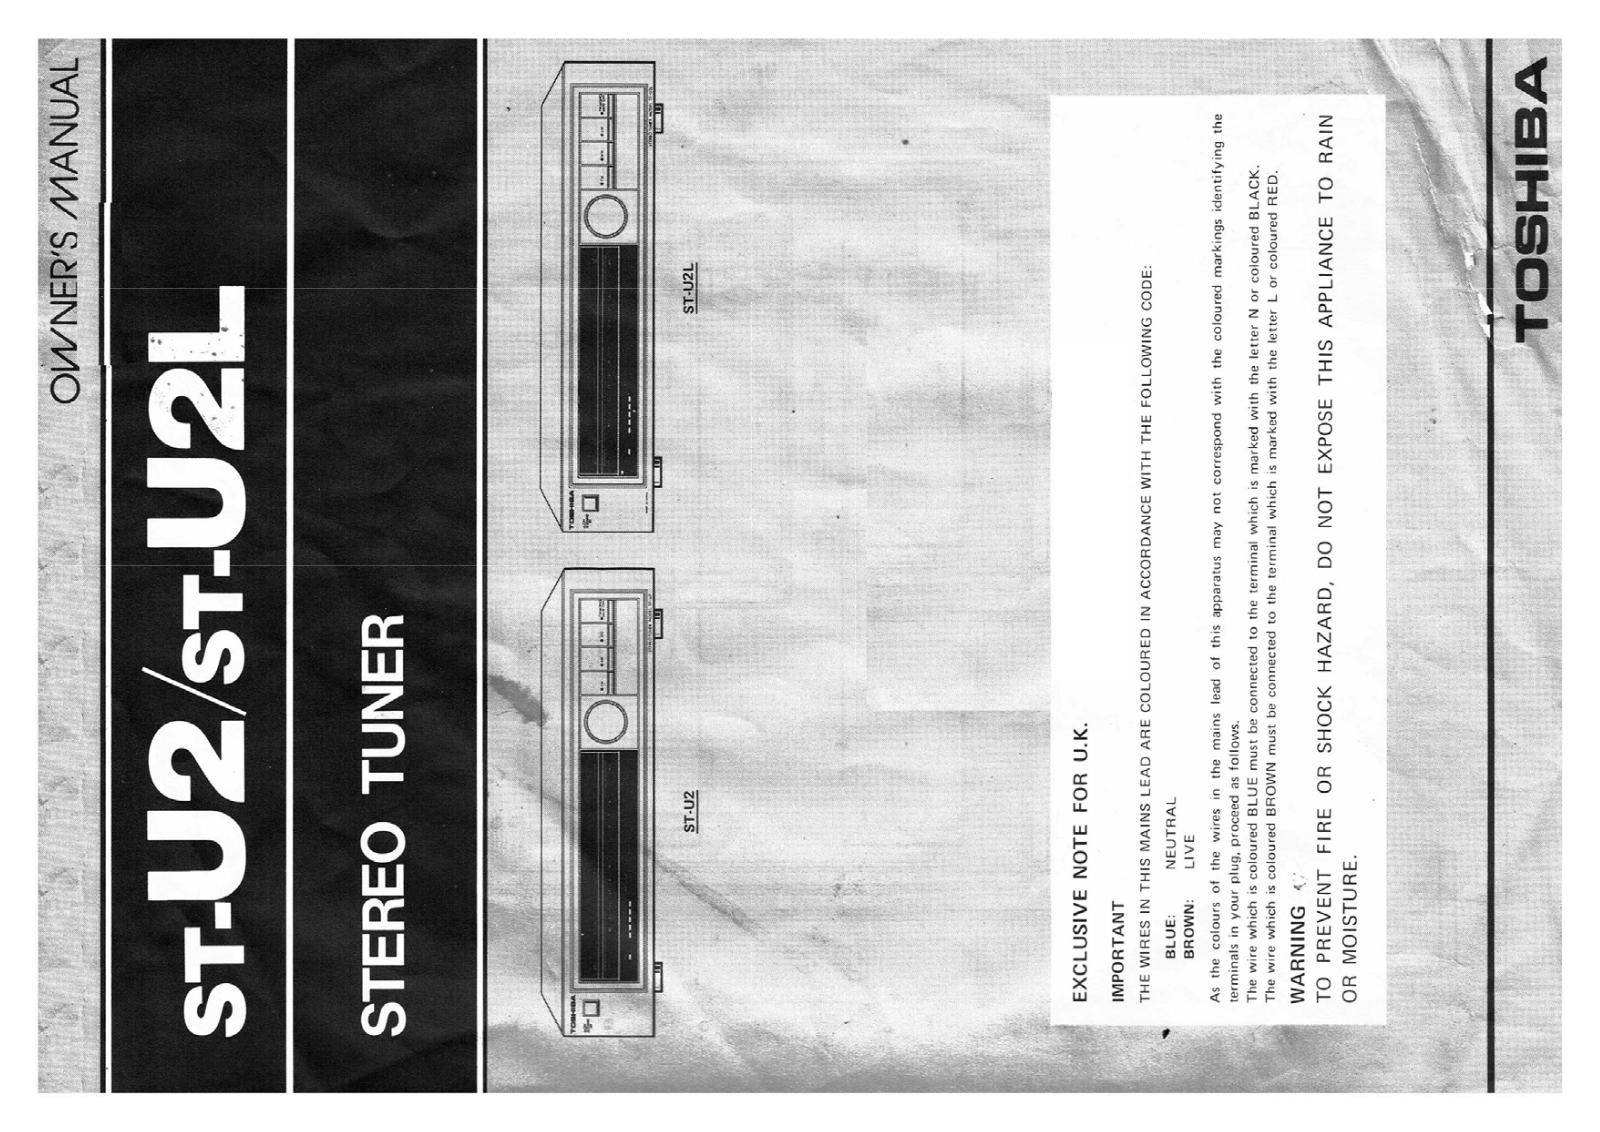 Toshiba ST-U2L, ST-U2 Owners Manual